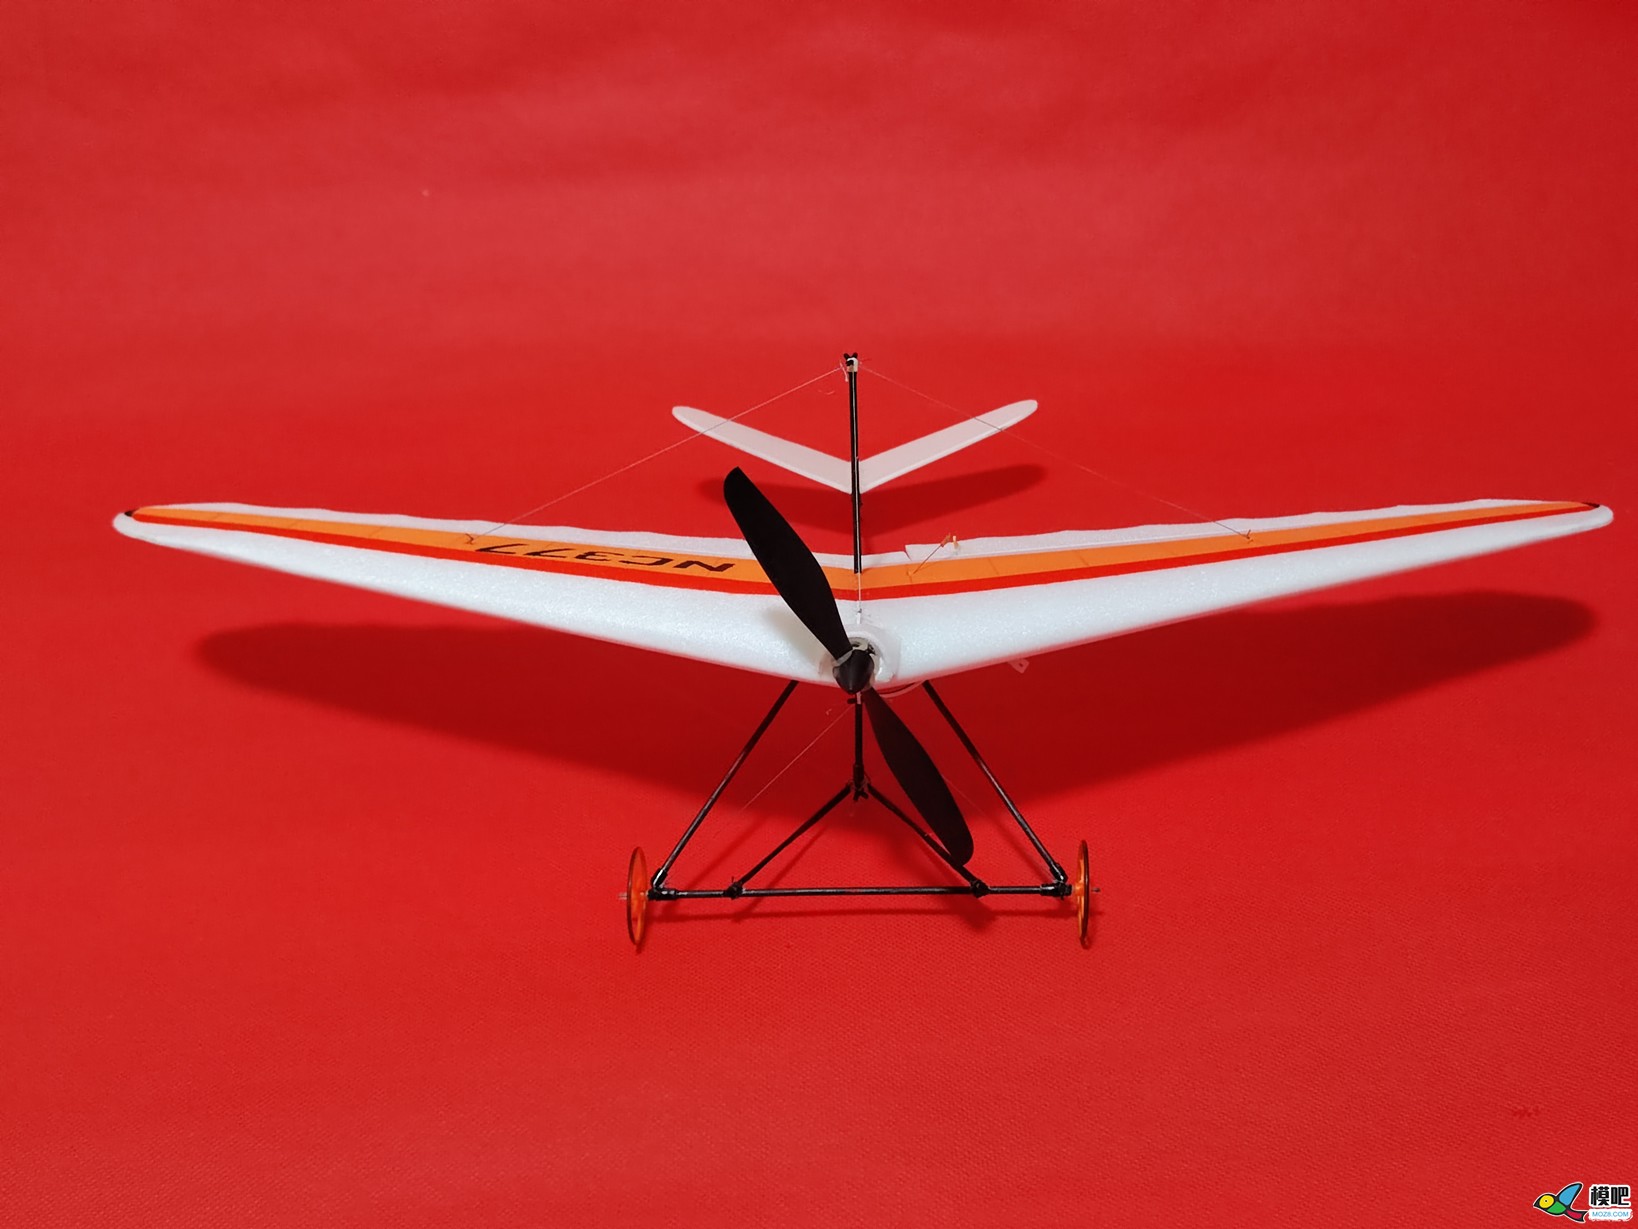 【爱因制造】自制不知名滑翔飞翼机 电池,图纸,接收机,飞翼,滑翔伞 作者:xbnlkdbxl 164 